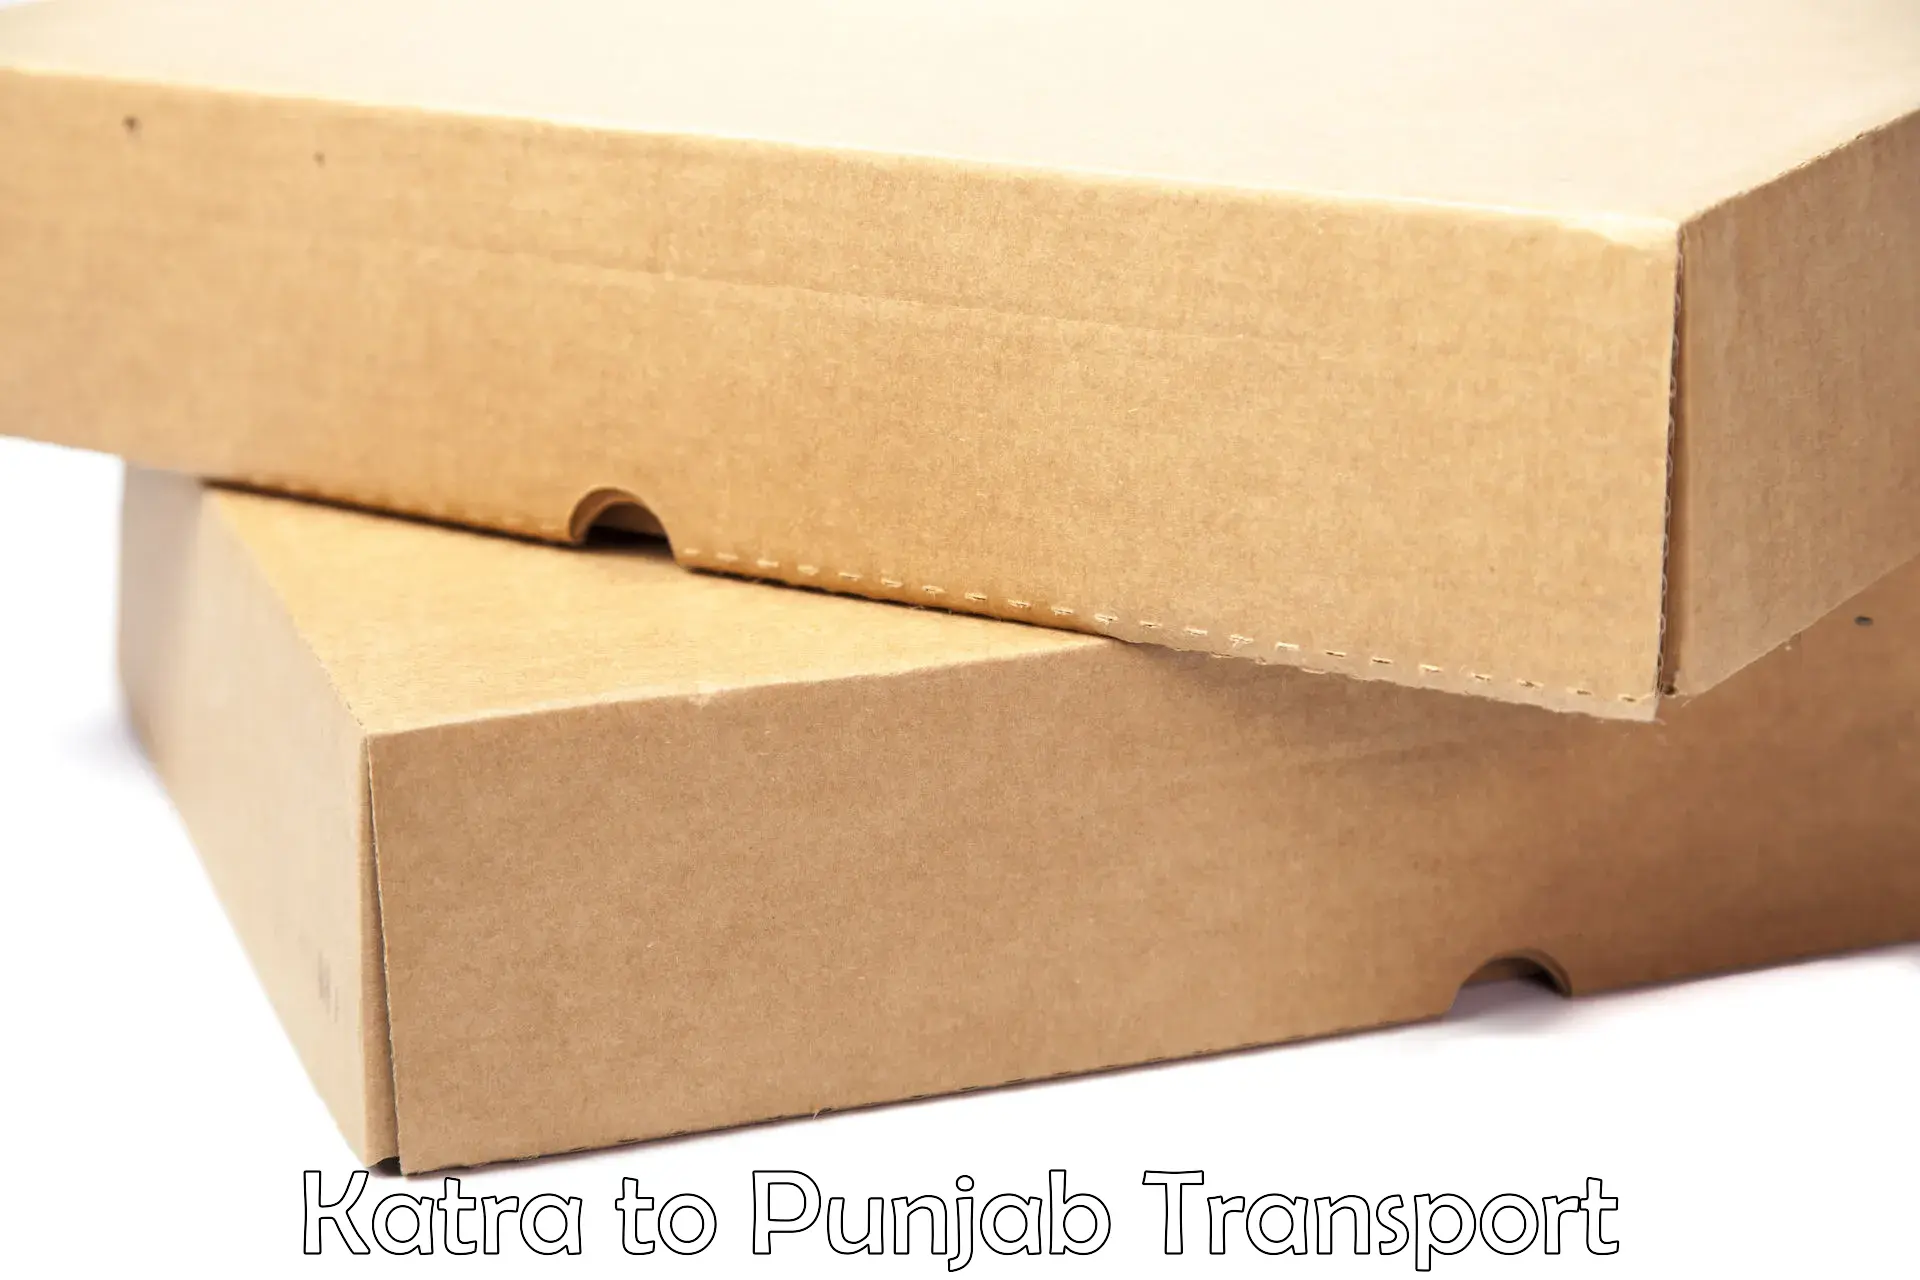 Furniture transport service in Katra to Punjab